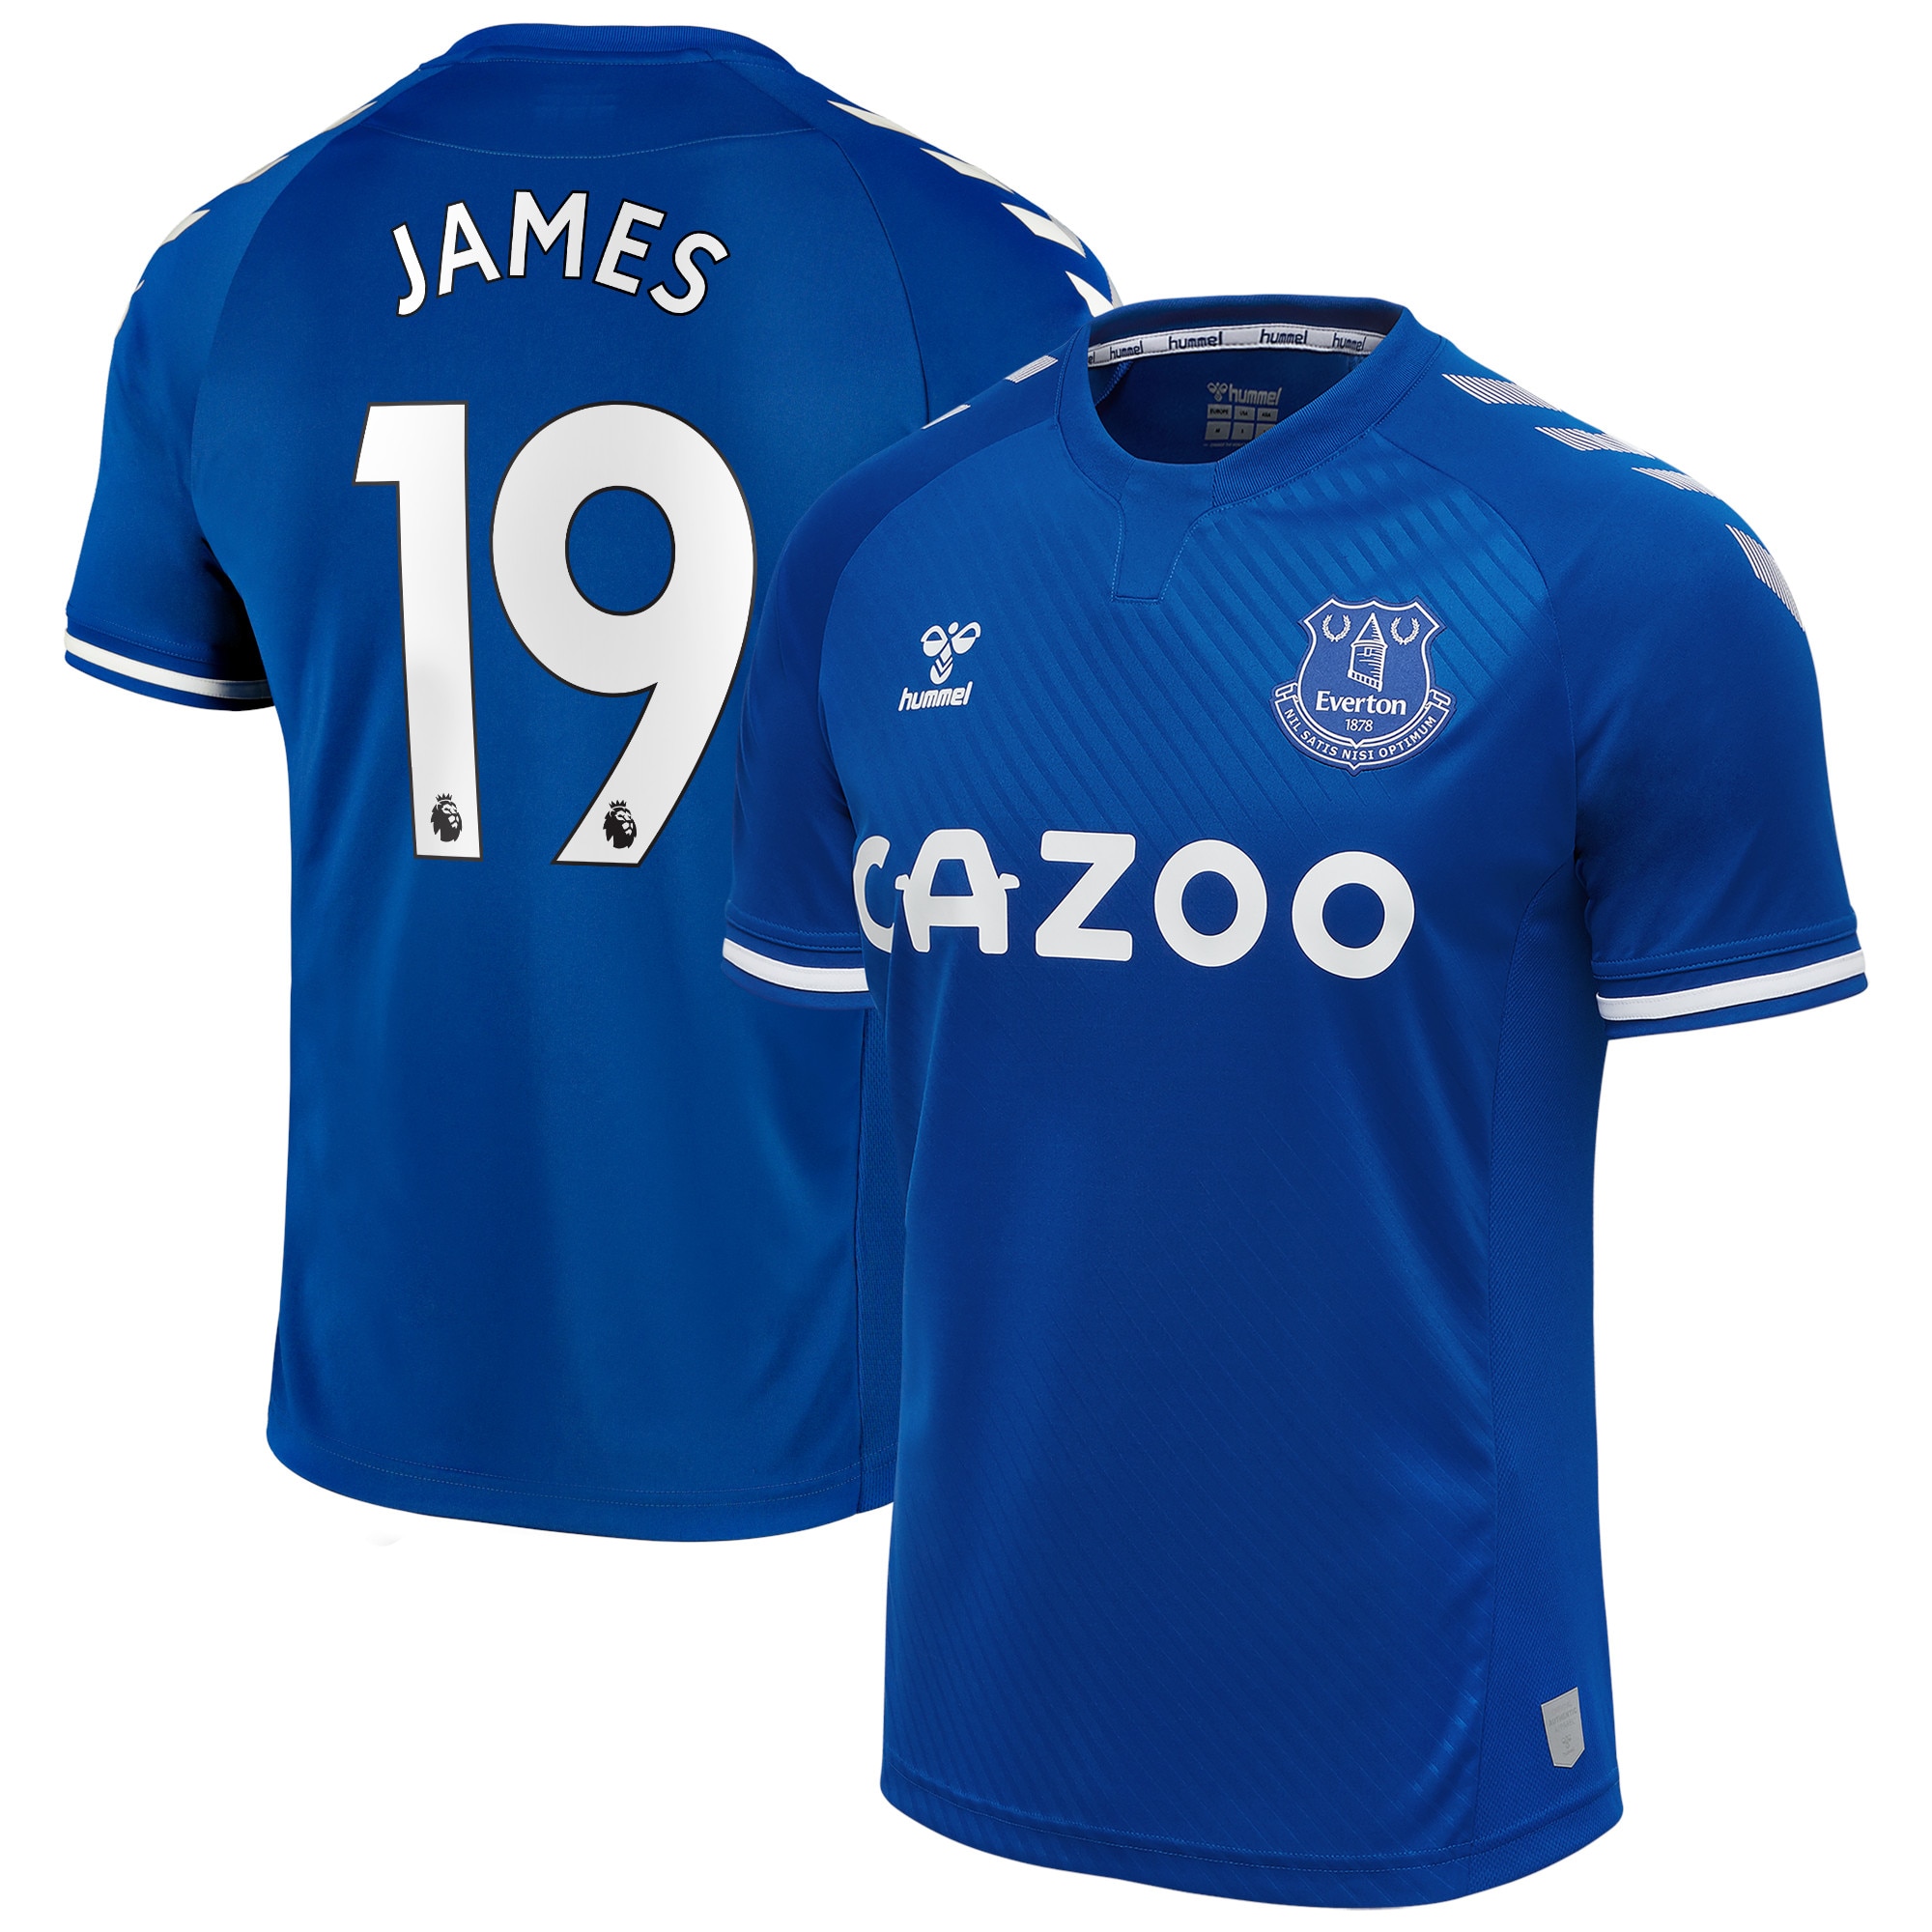 Precio de la camiseta de James en Everton